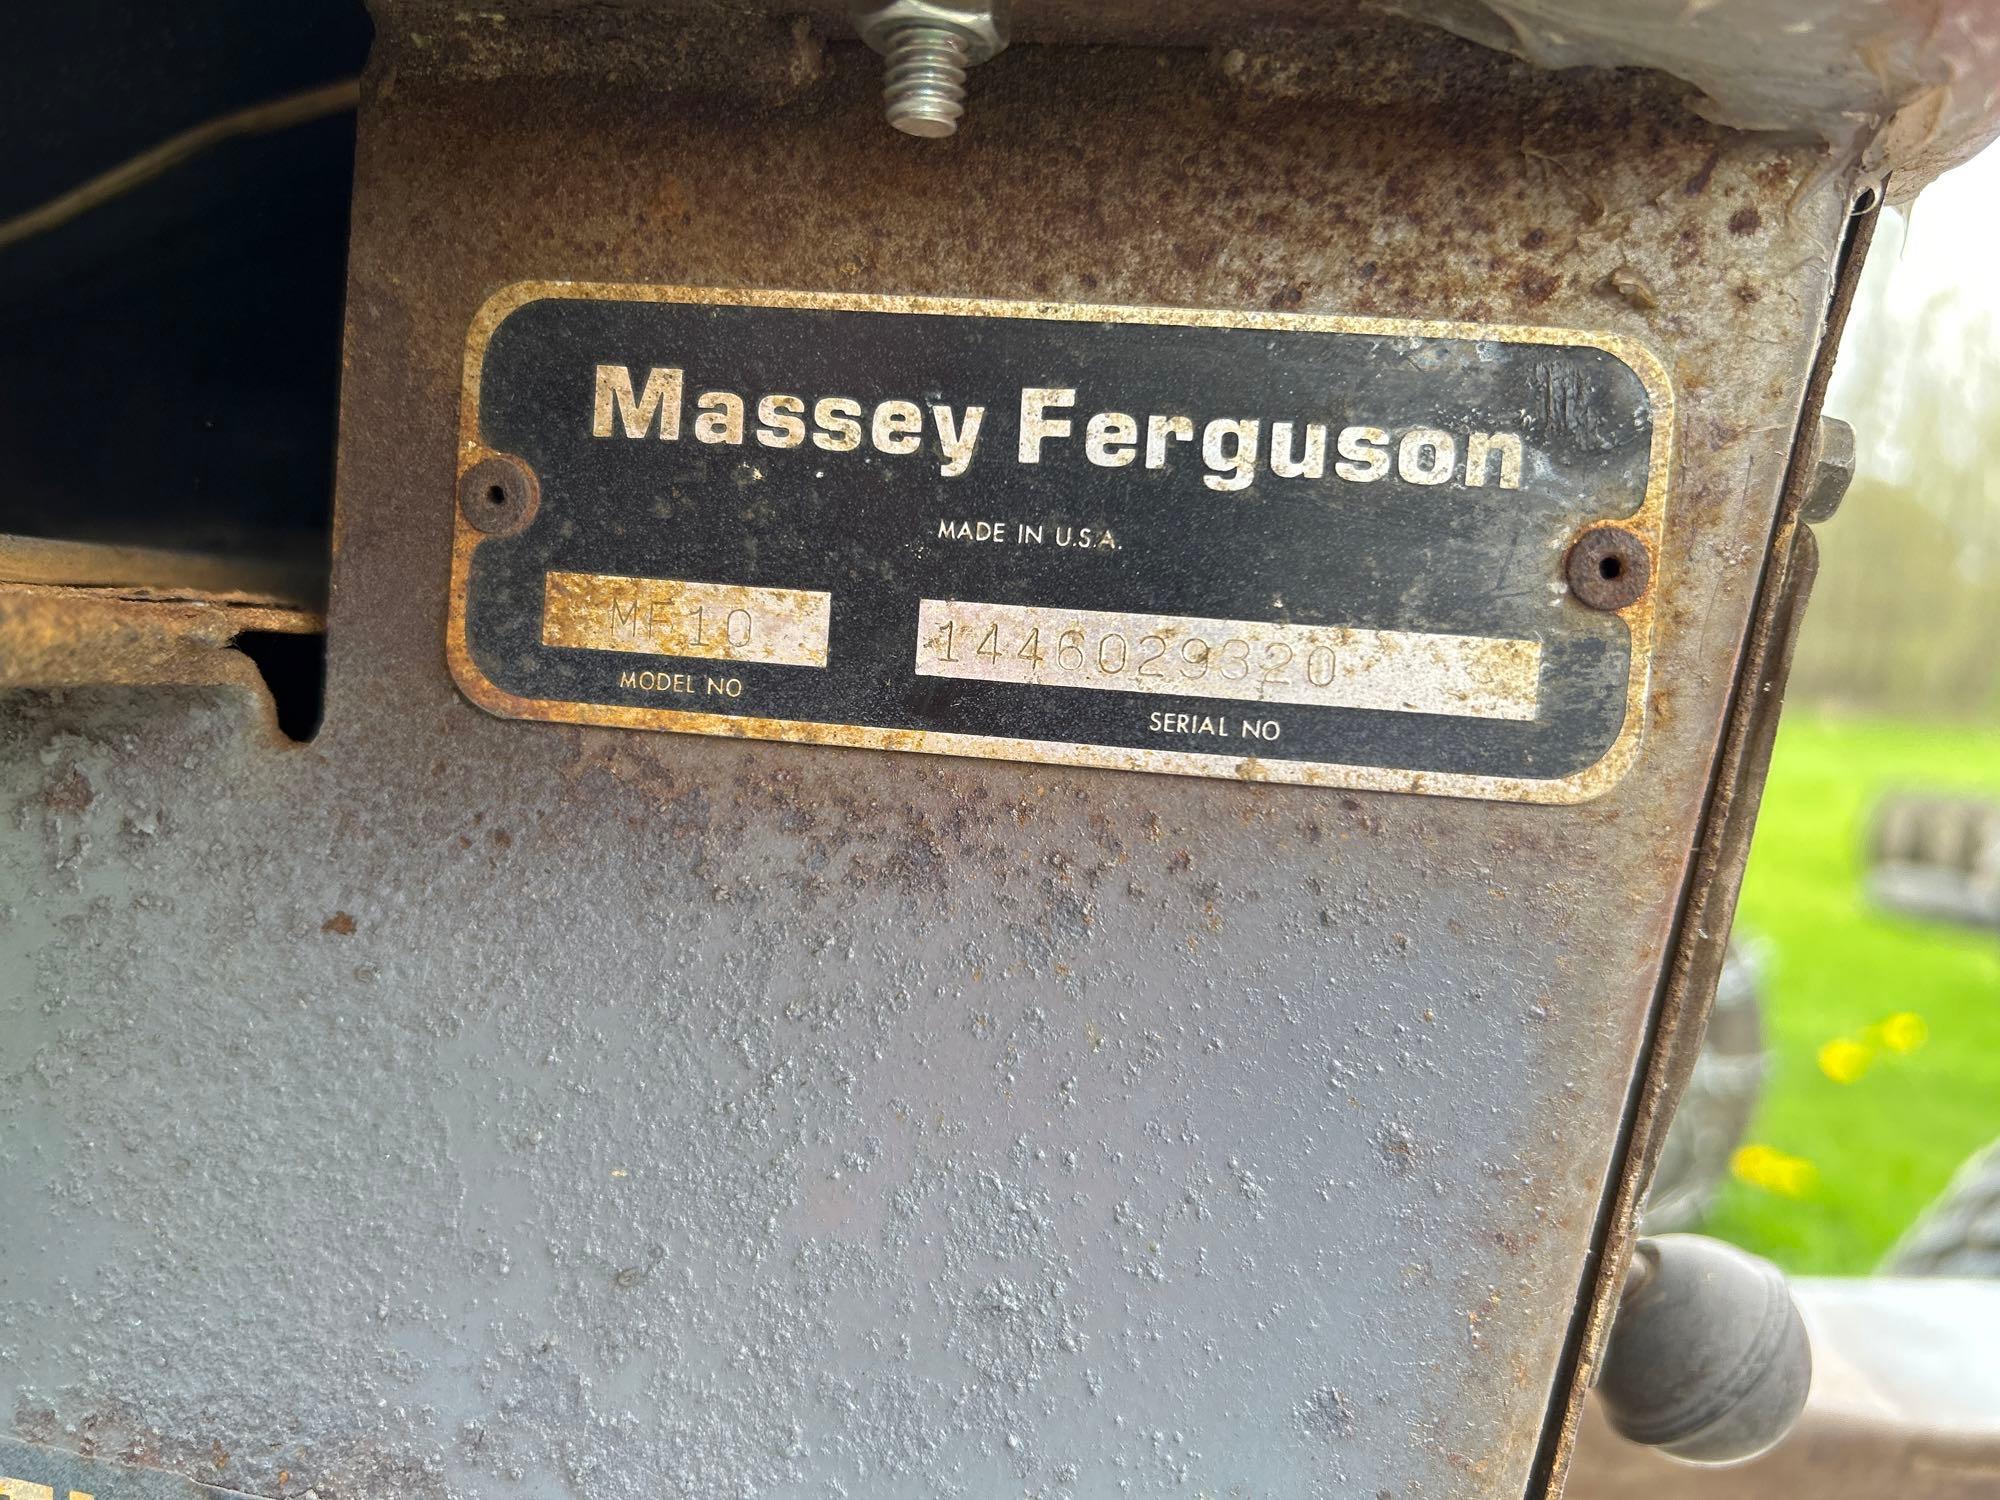 1976 Massey Ferguson 10 lawn tractor